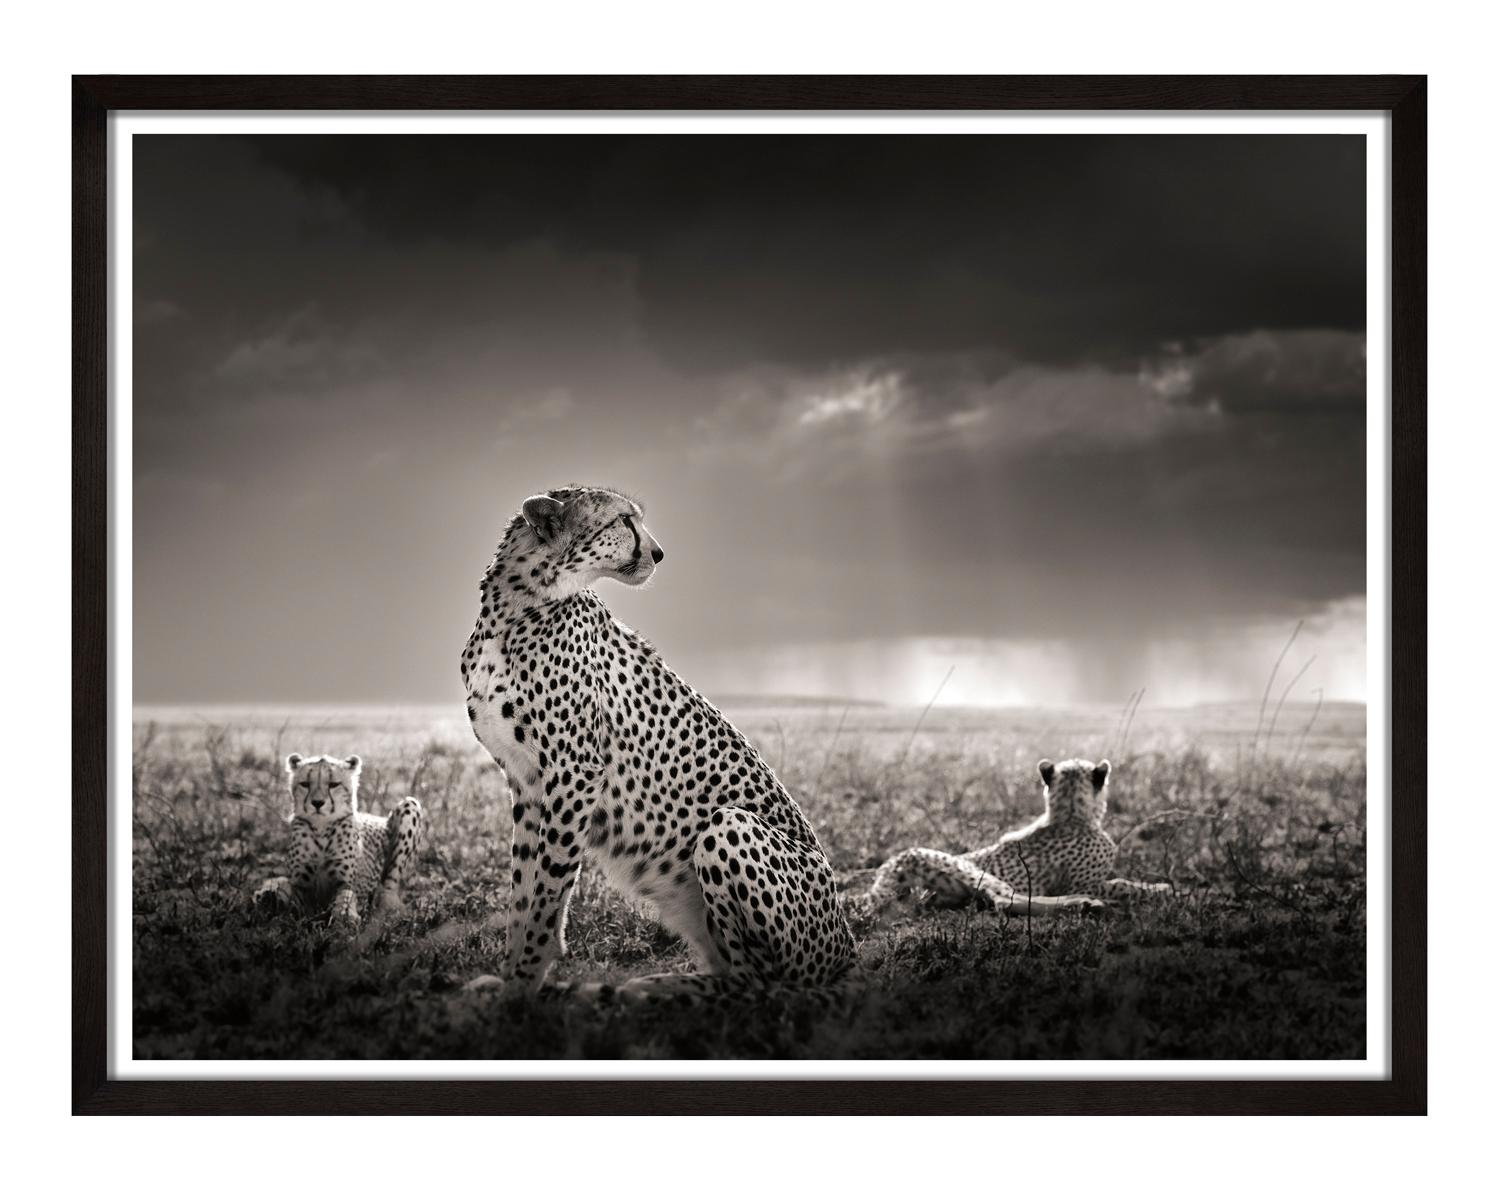 Schwarze Tränen II, Tier, Tierwelt, Schwarz-Weiß-Fotografie, Geparden – Photograph von Joachim Schmeisser